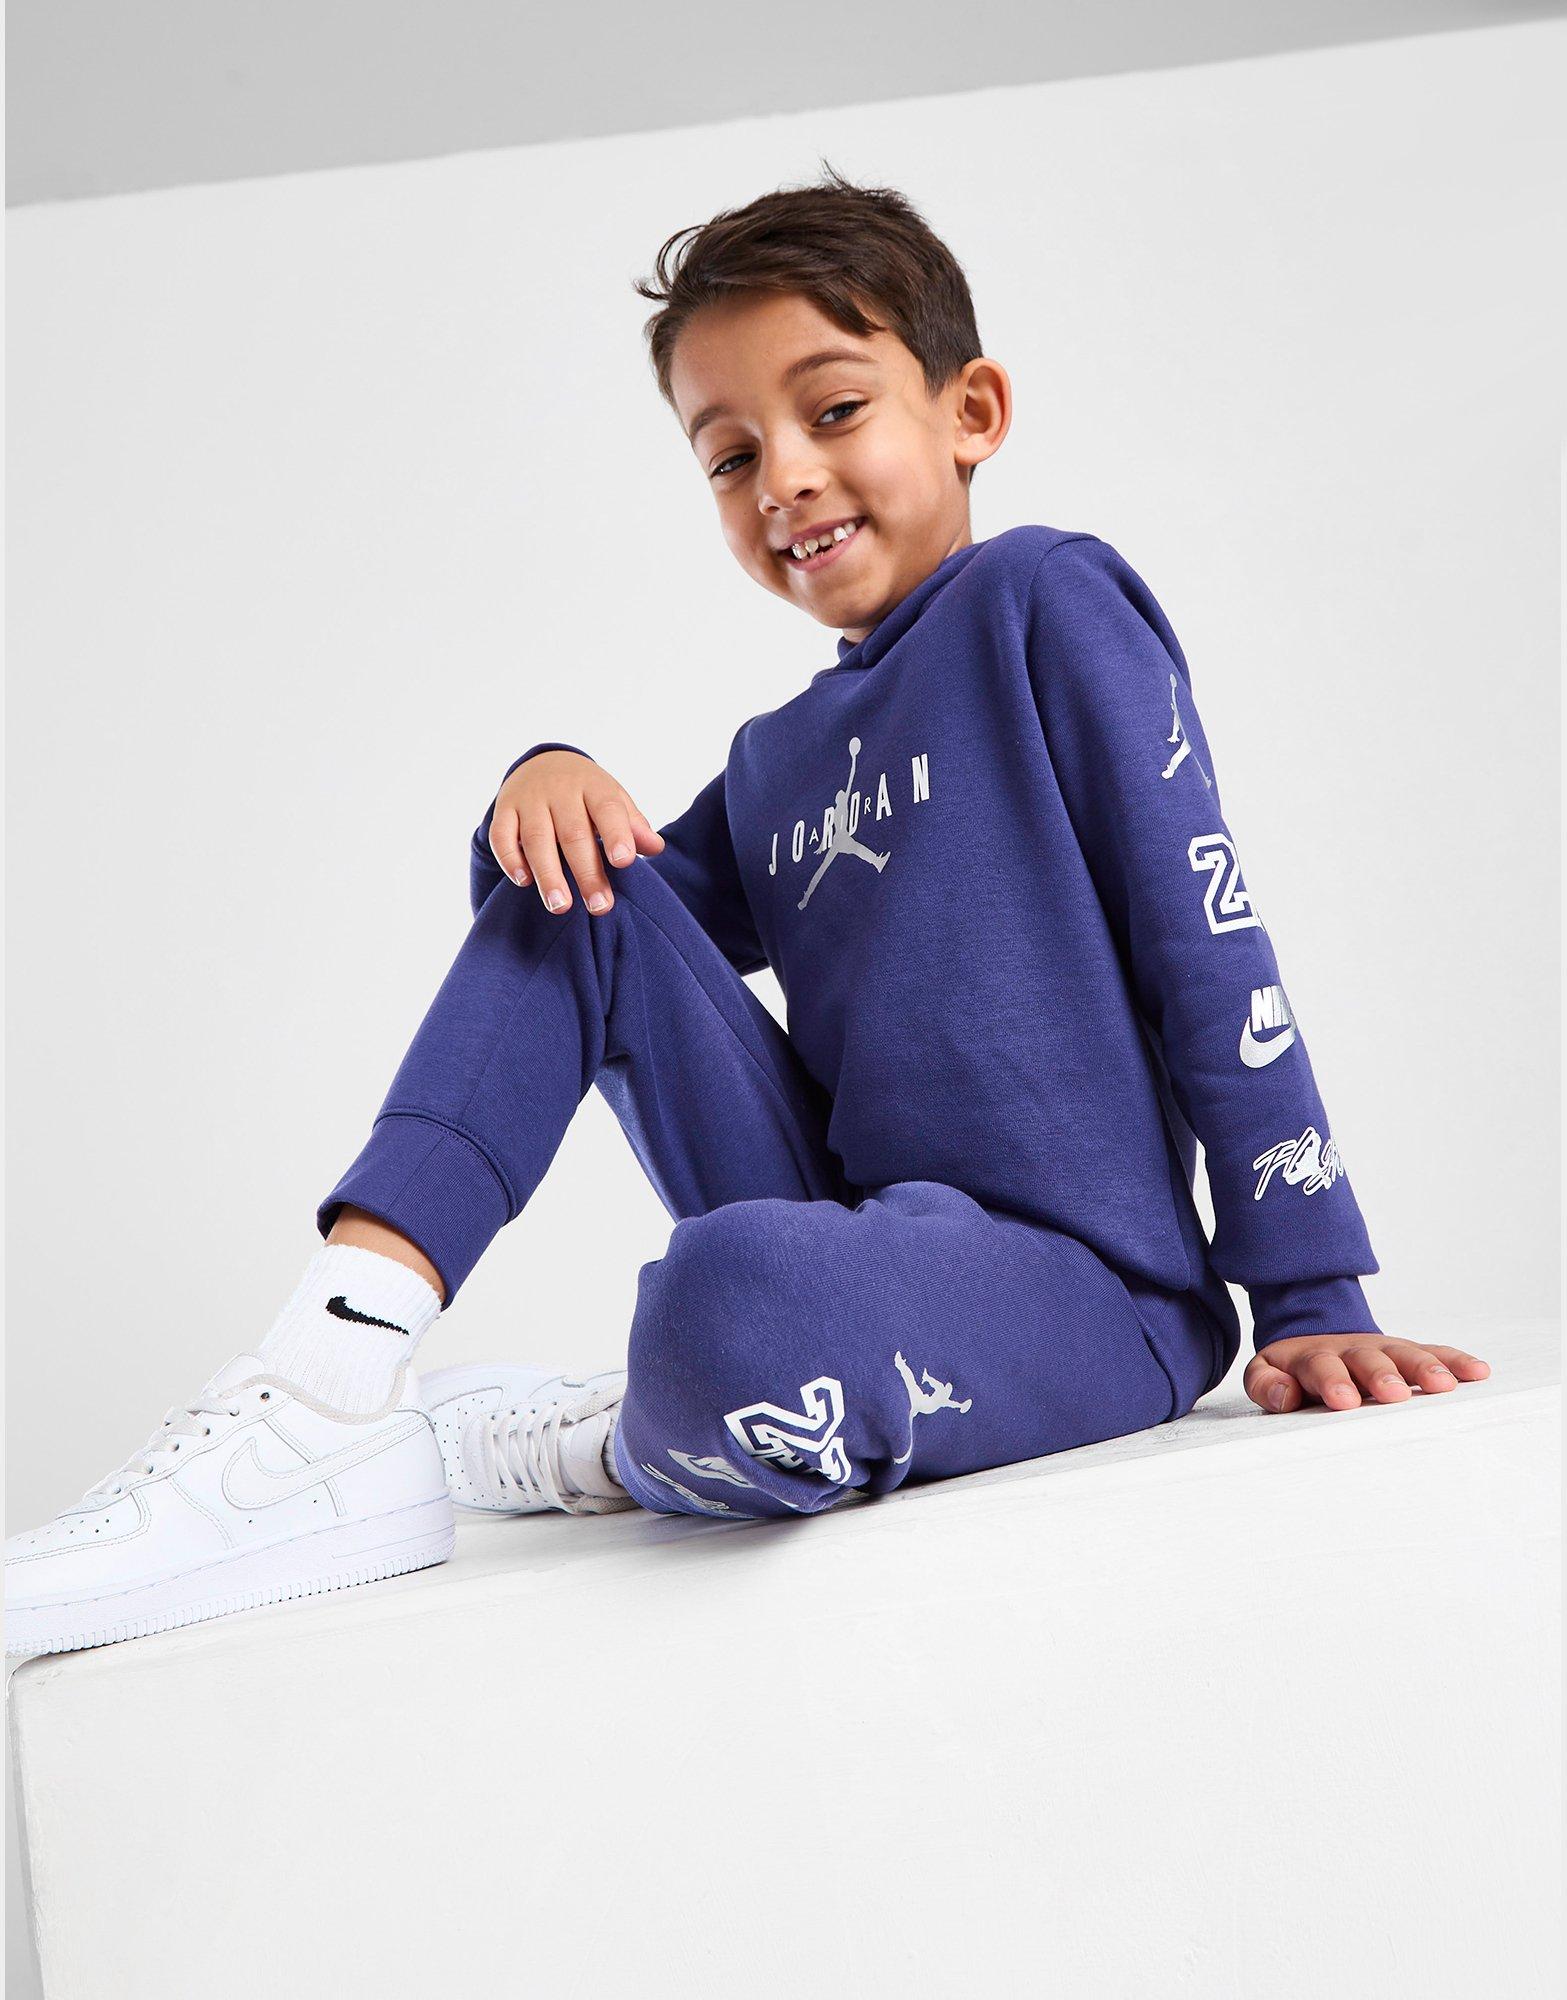 Carter's Pijama de forro polar con pies para niño pequeño, color azul, Azul